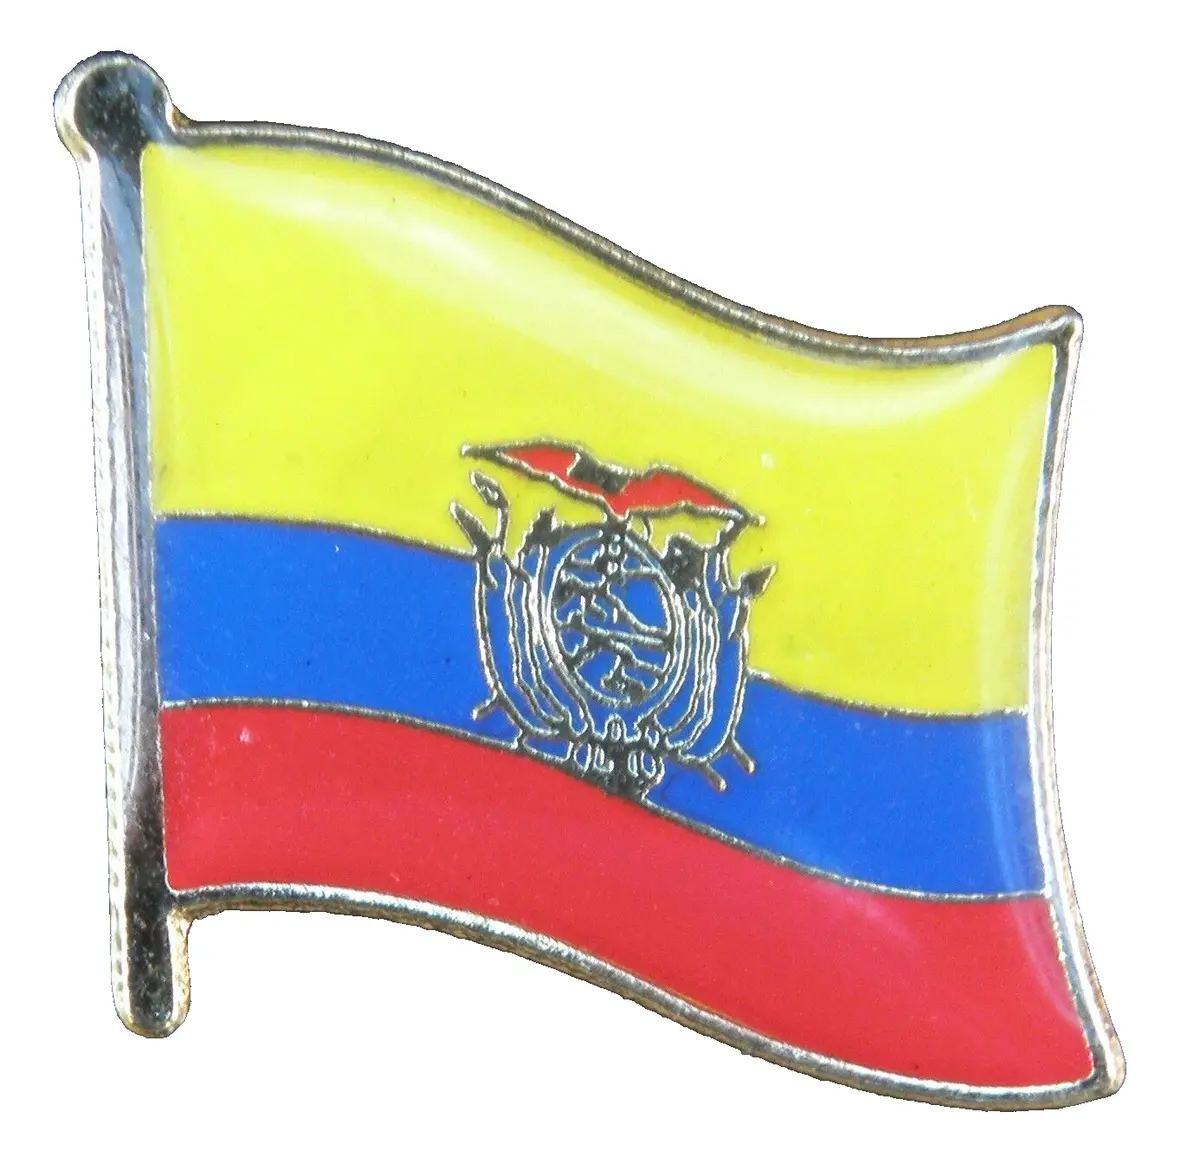 Ecuador flag pin badge brooch repãºblica del ecuador